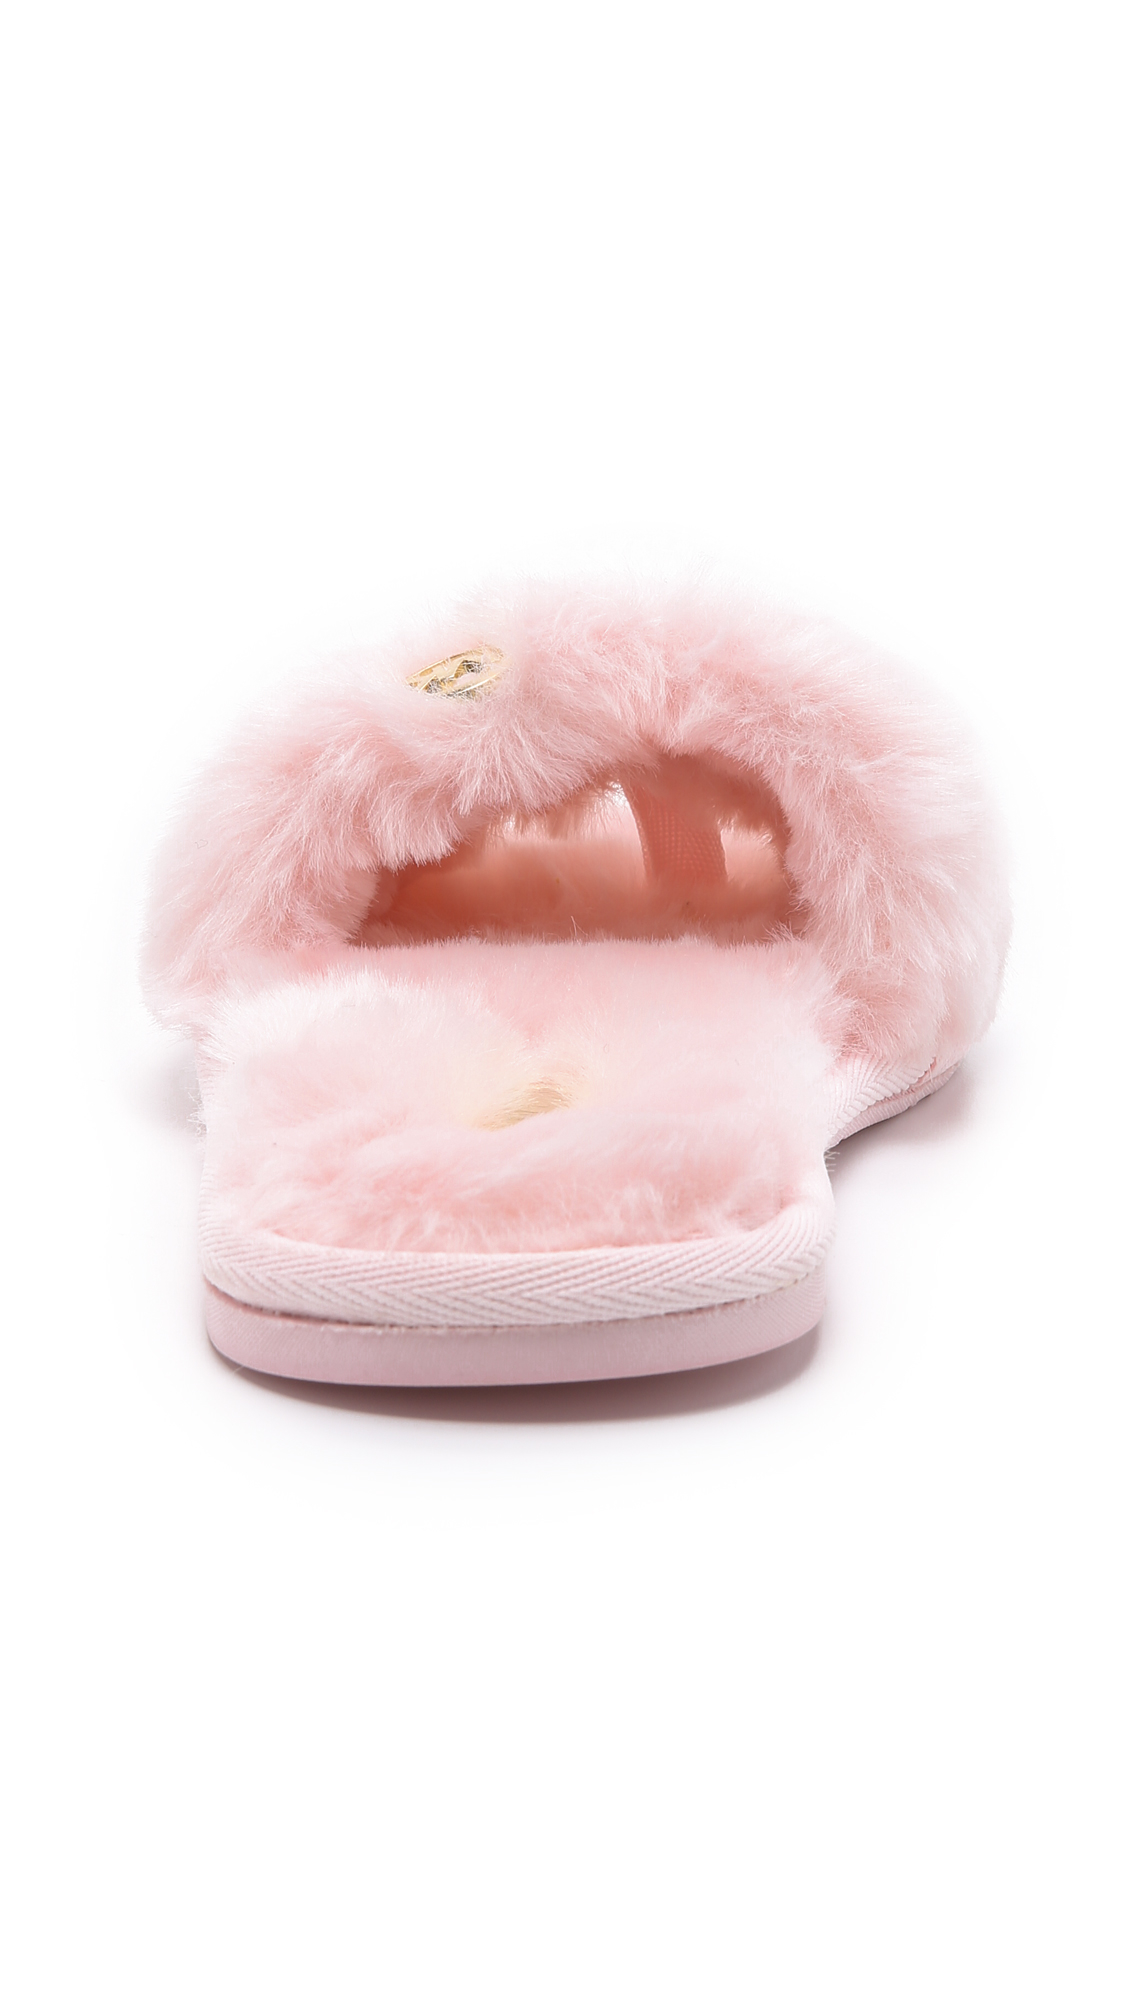 mk fuzzy slippers